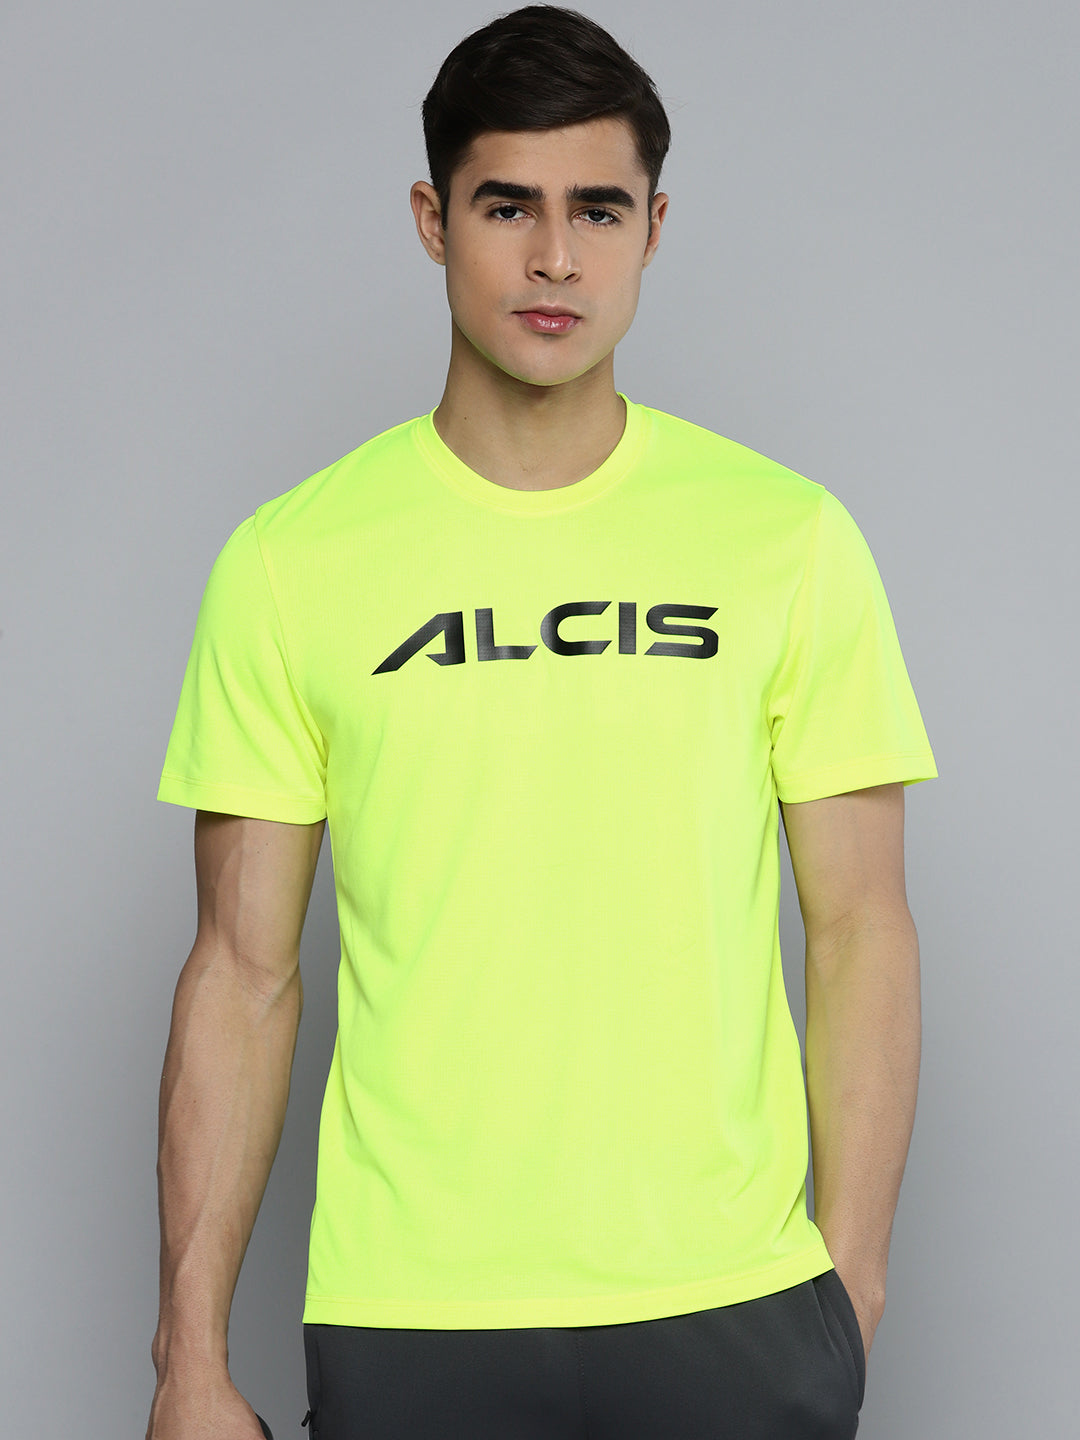 Alcis Men Lime Green Printed Tshirts